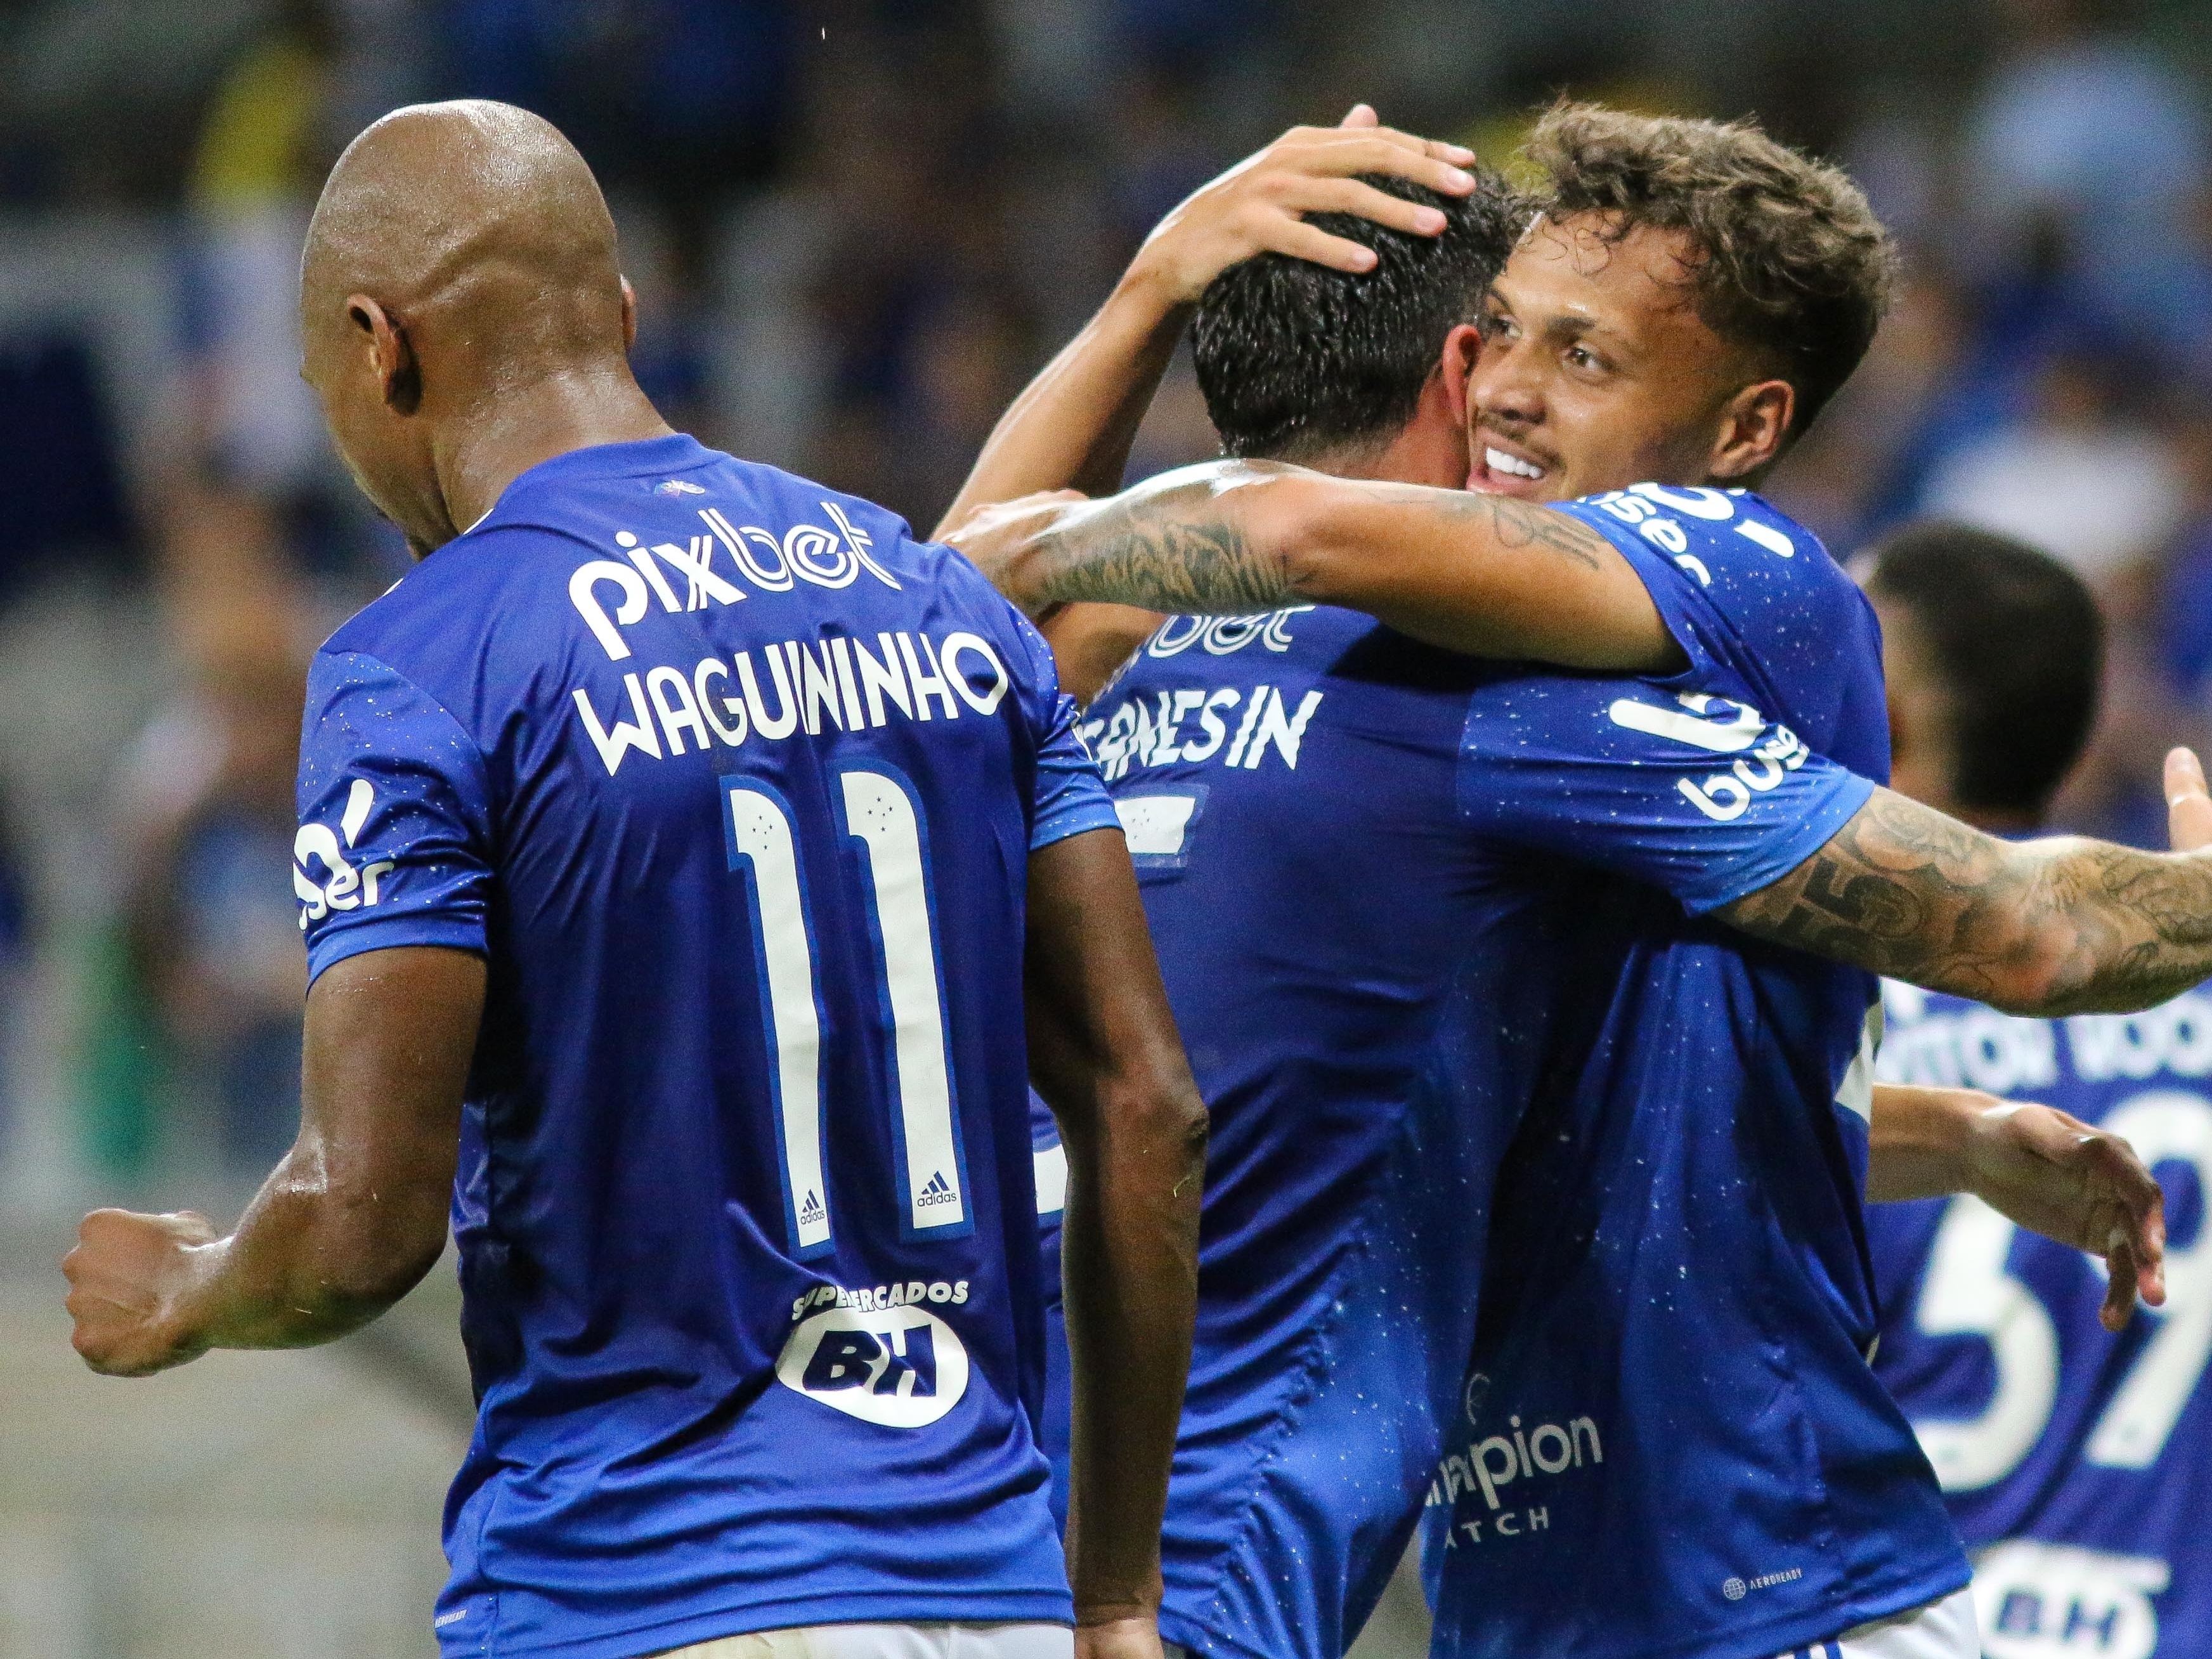 Saiba como assistir aos jogos do Cruzeiro no Campeonato Mineiro